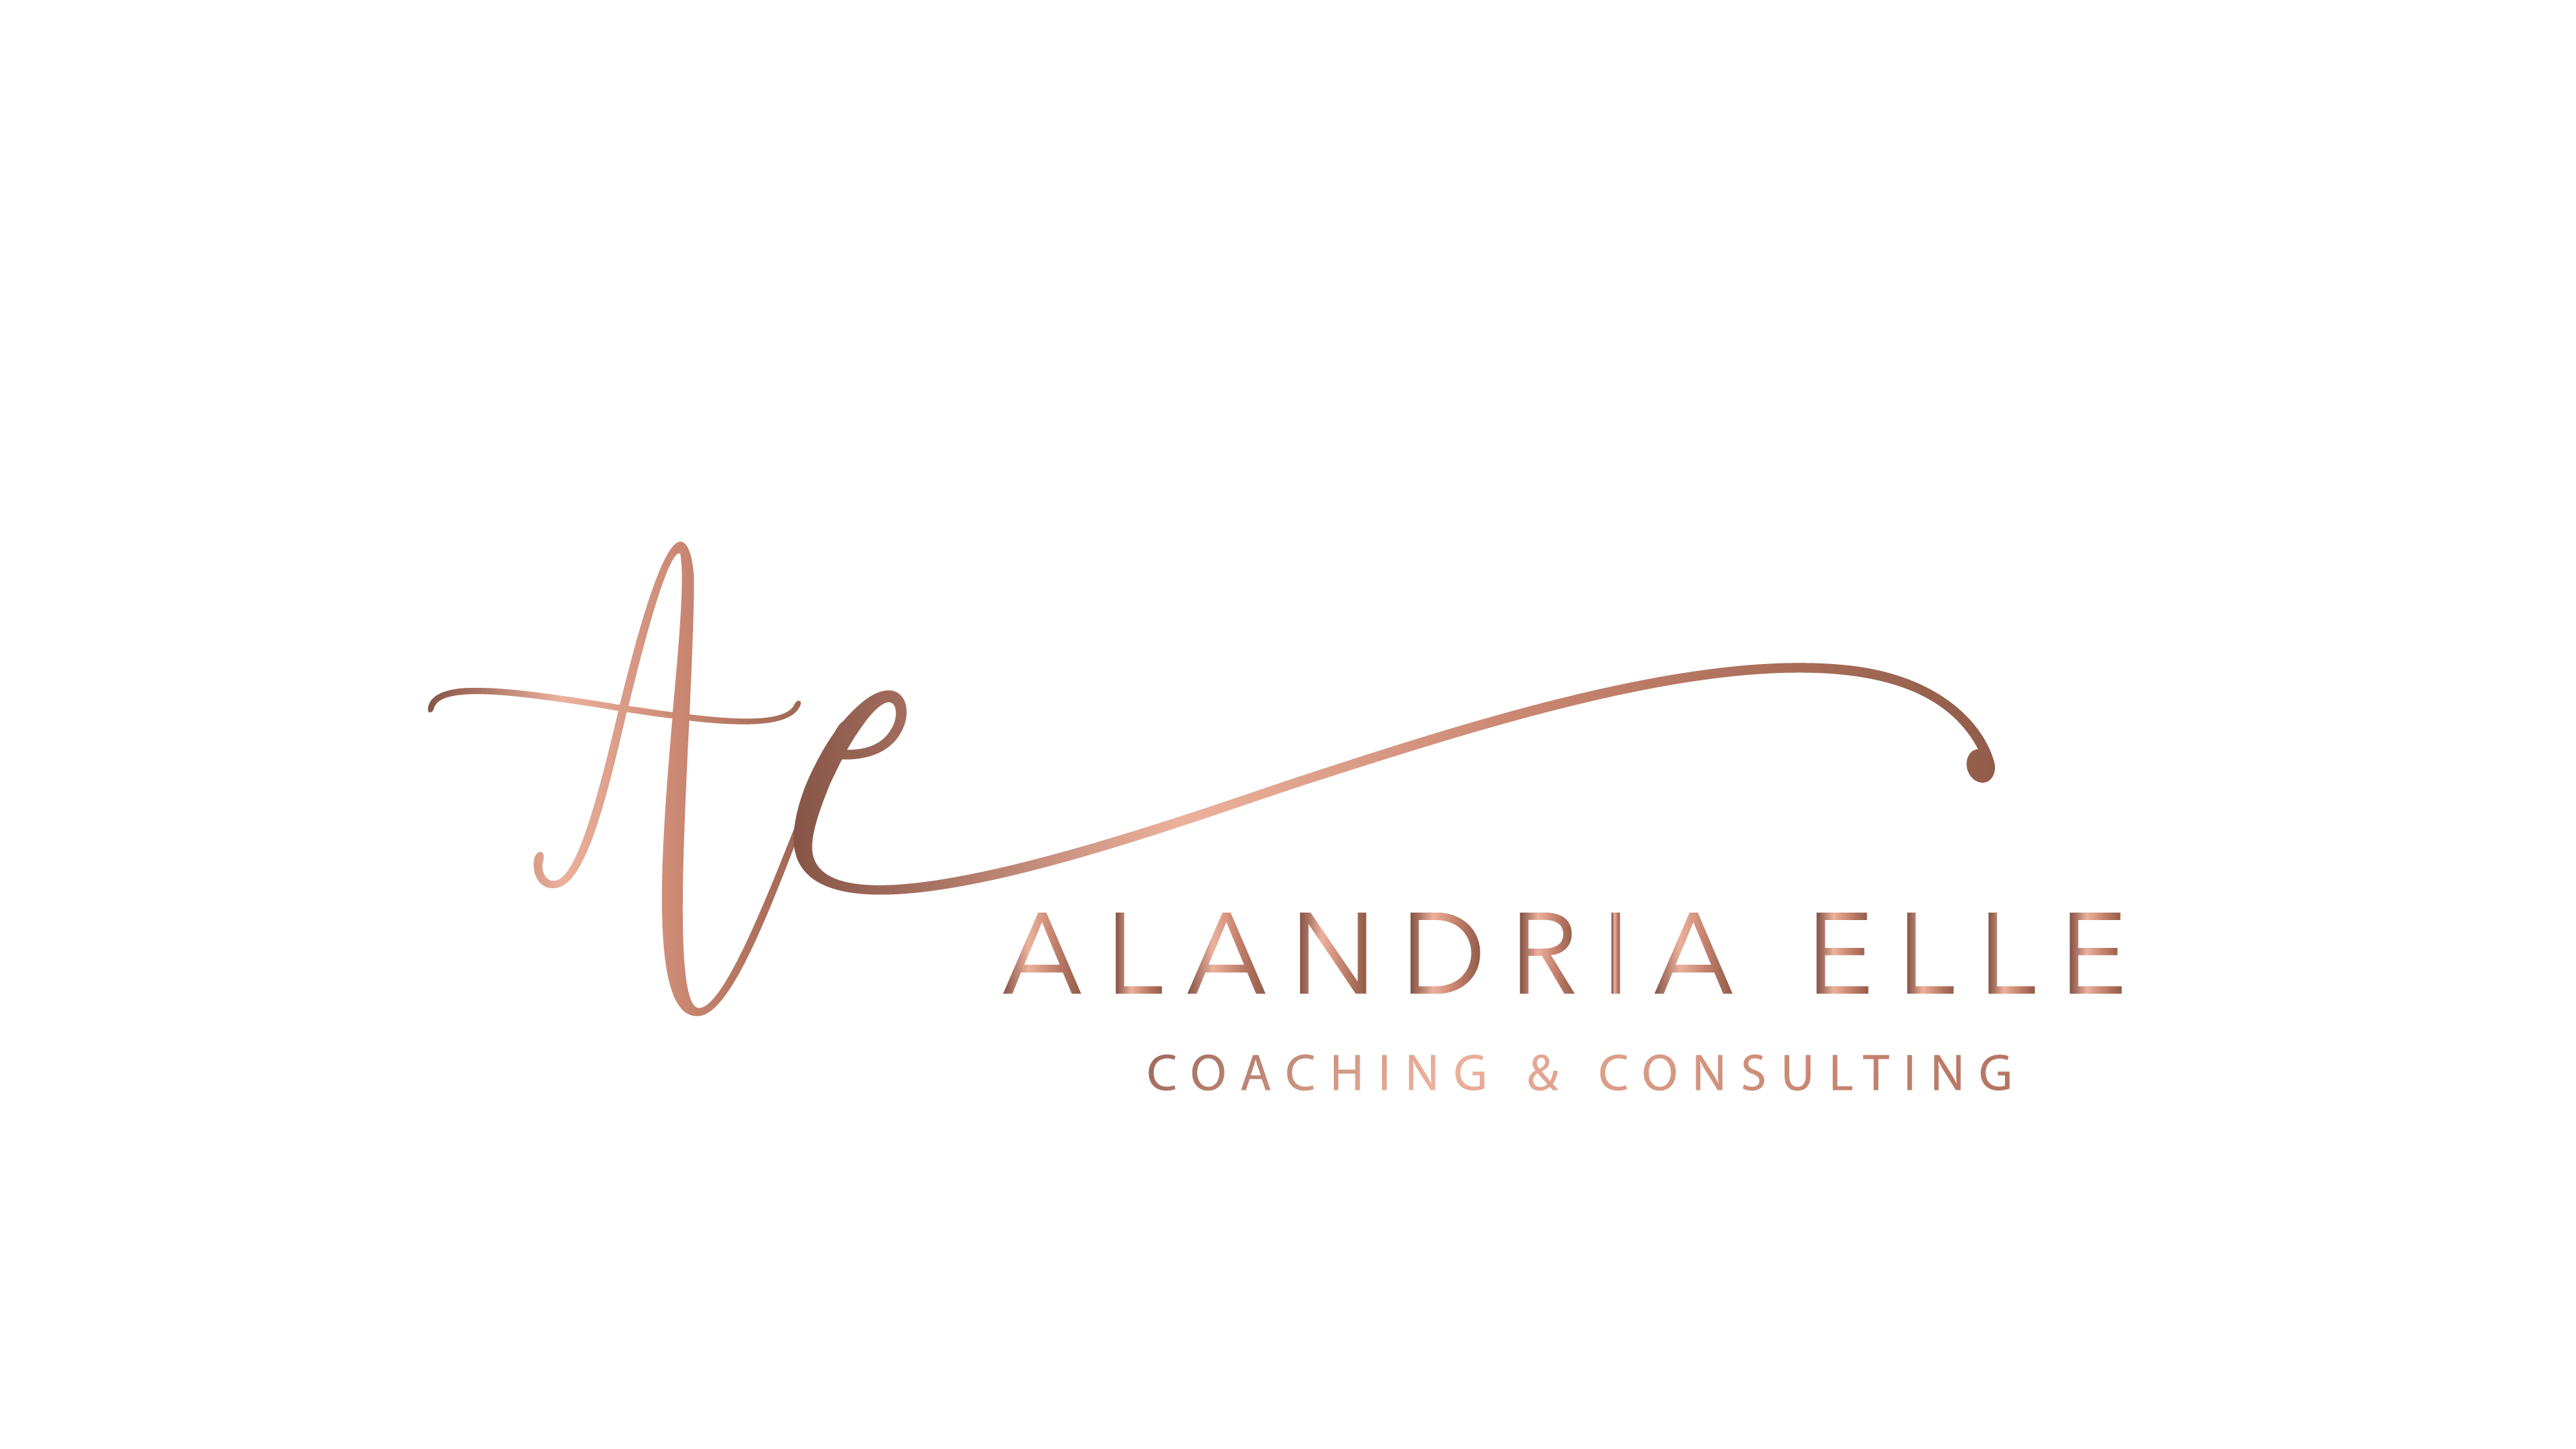 Alandria Elle International